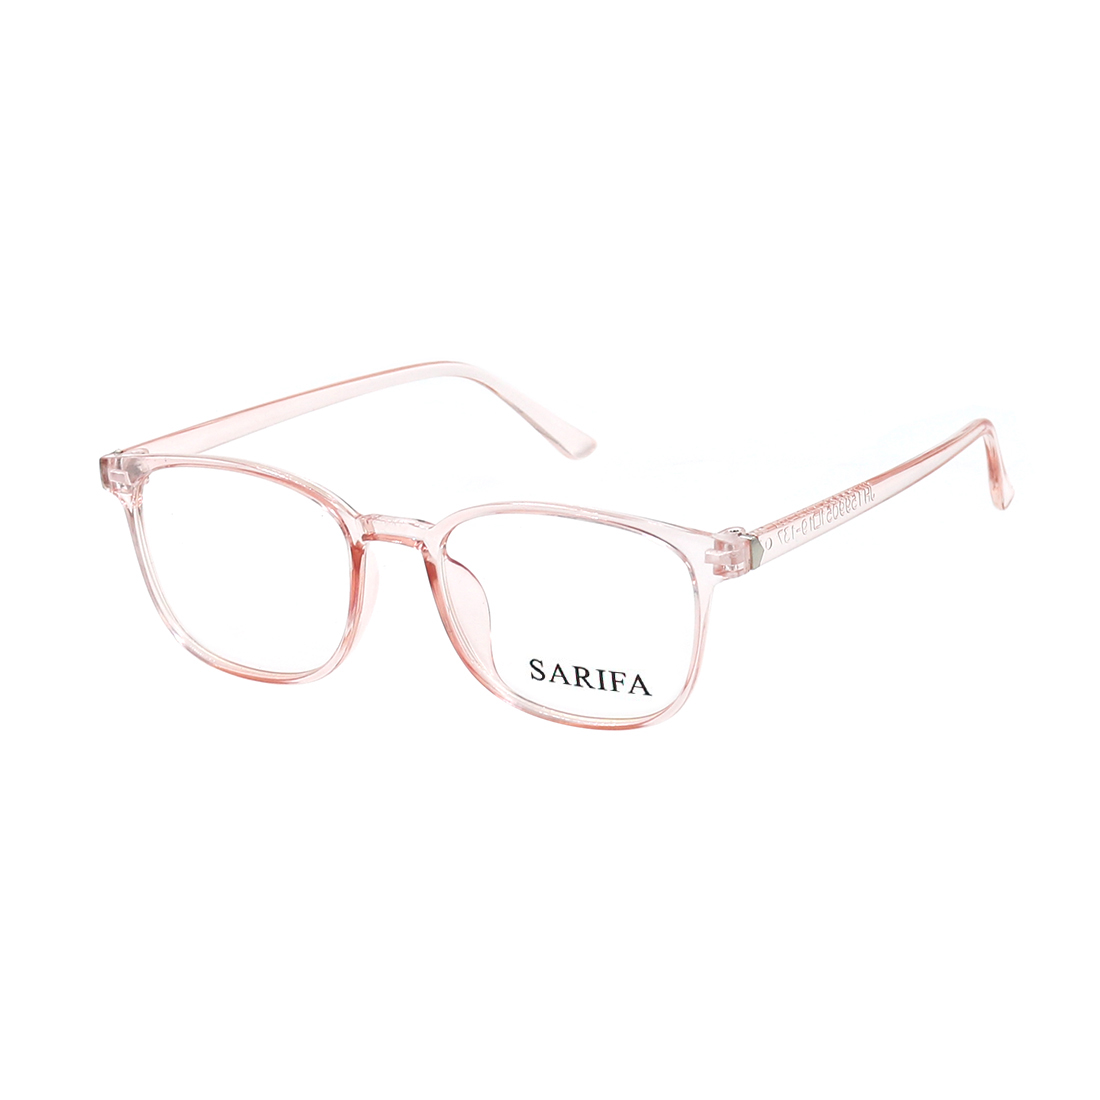 Gọng kính, mắt kính chính hãng SARIFA JH15990 (51-19-137) nhiều màu